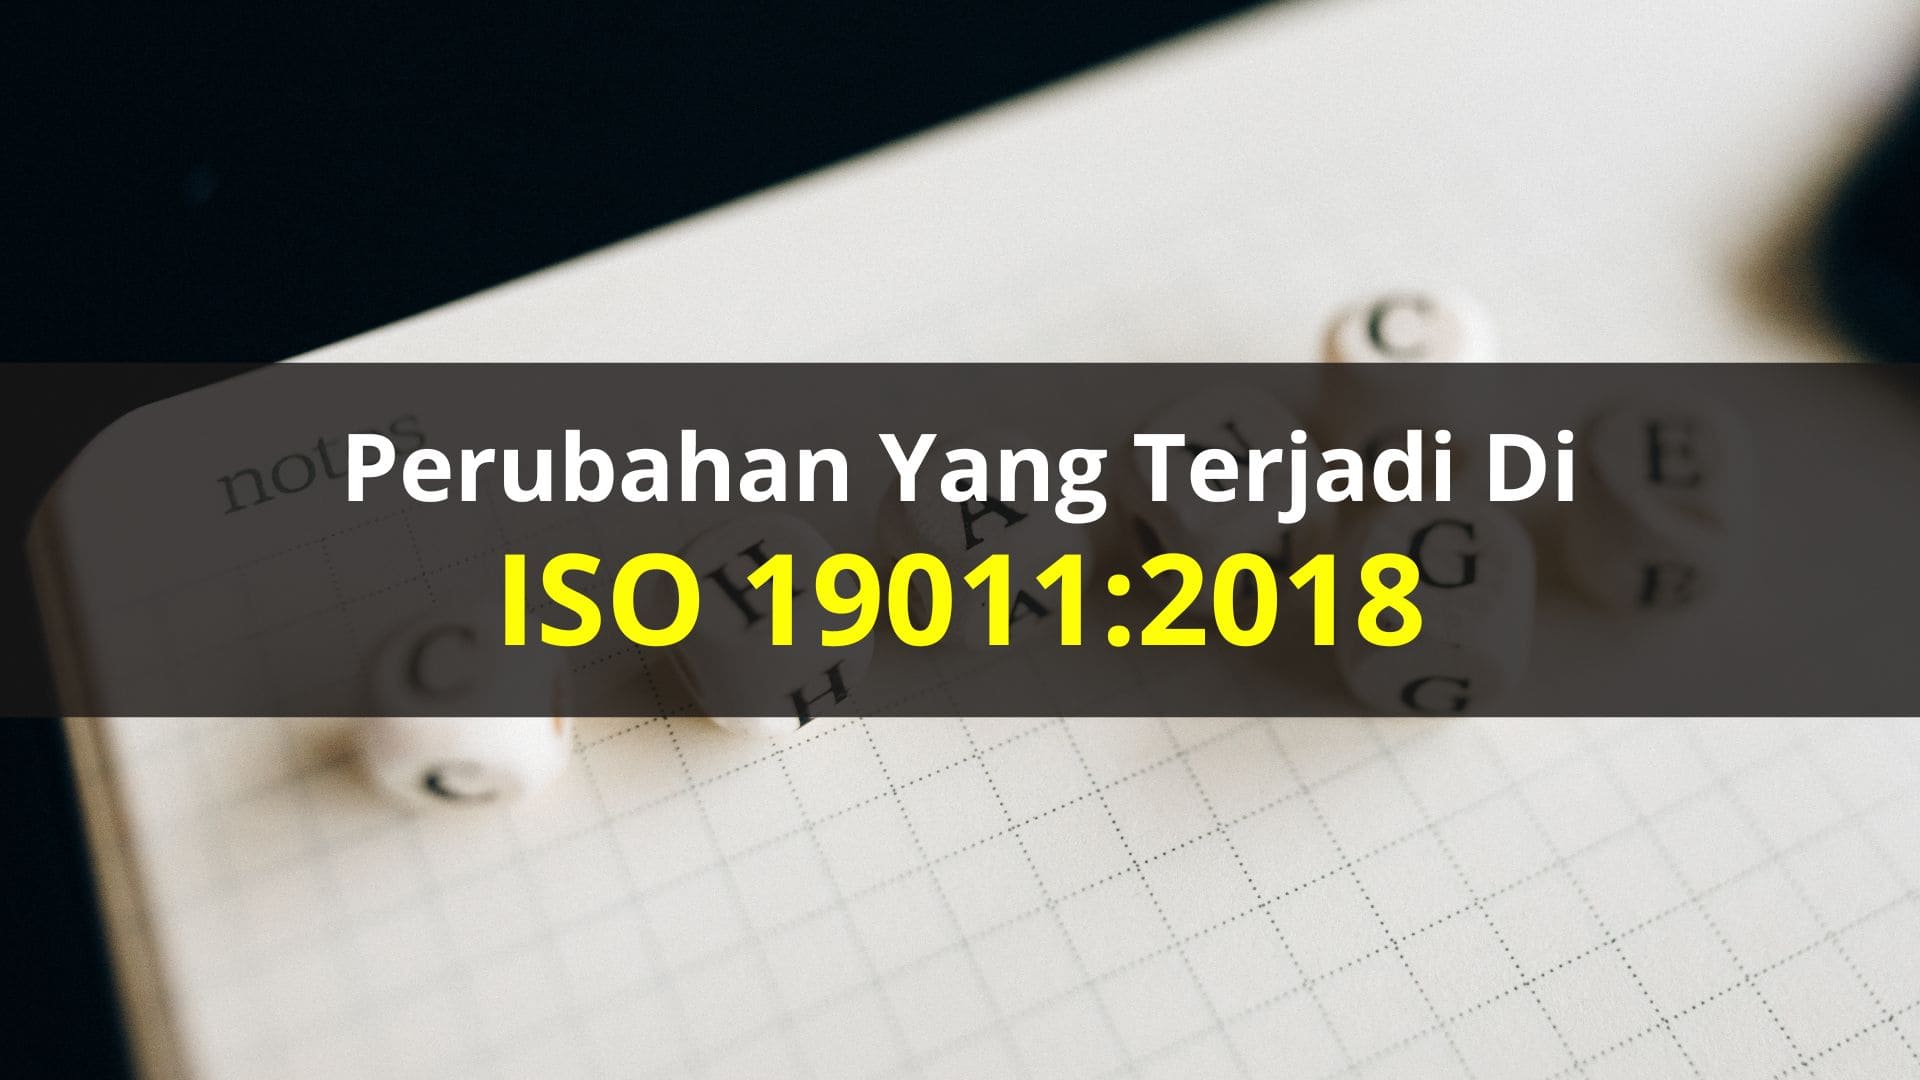 Perubahan yang Terjadi di ISO 19011:2018